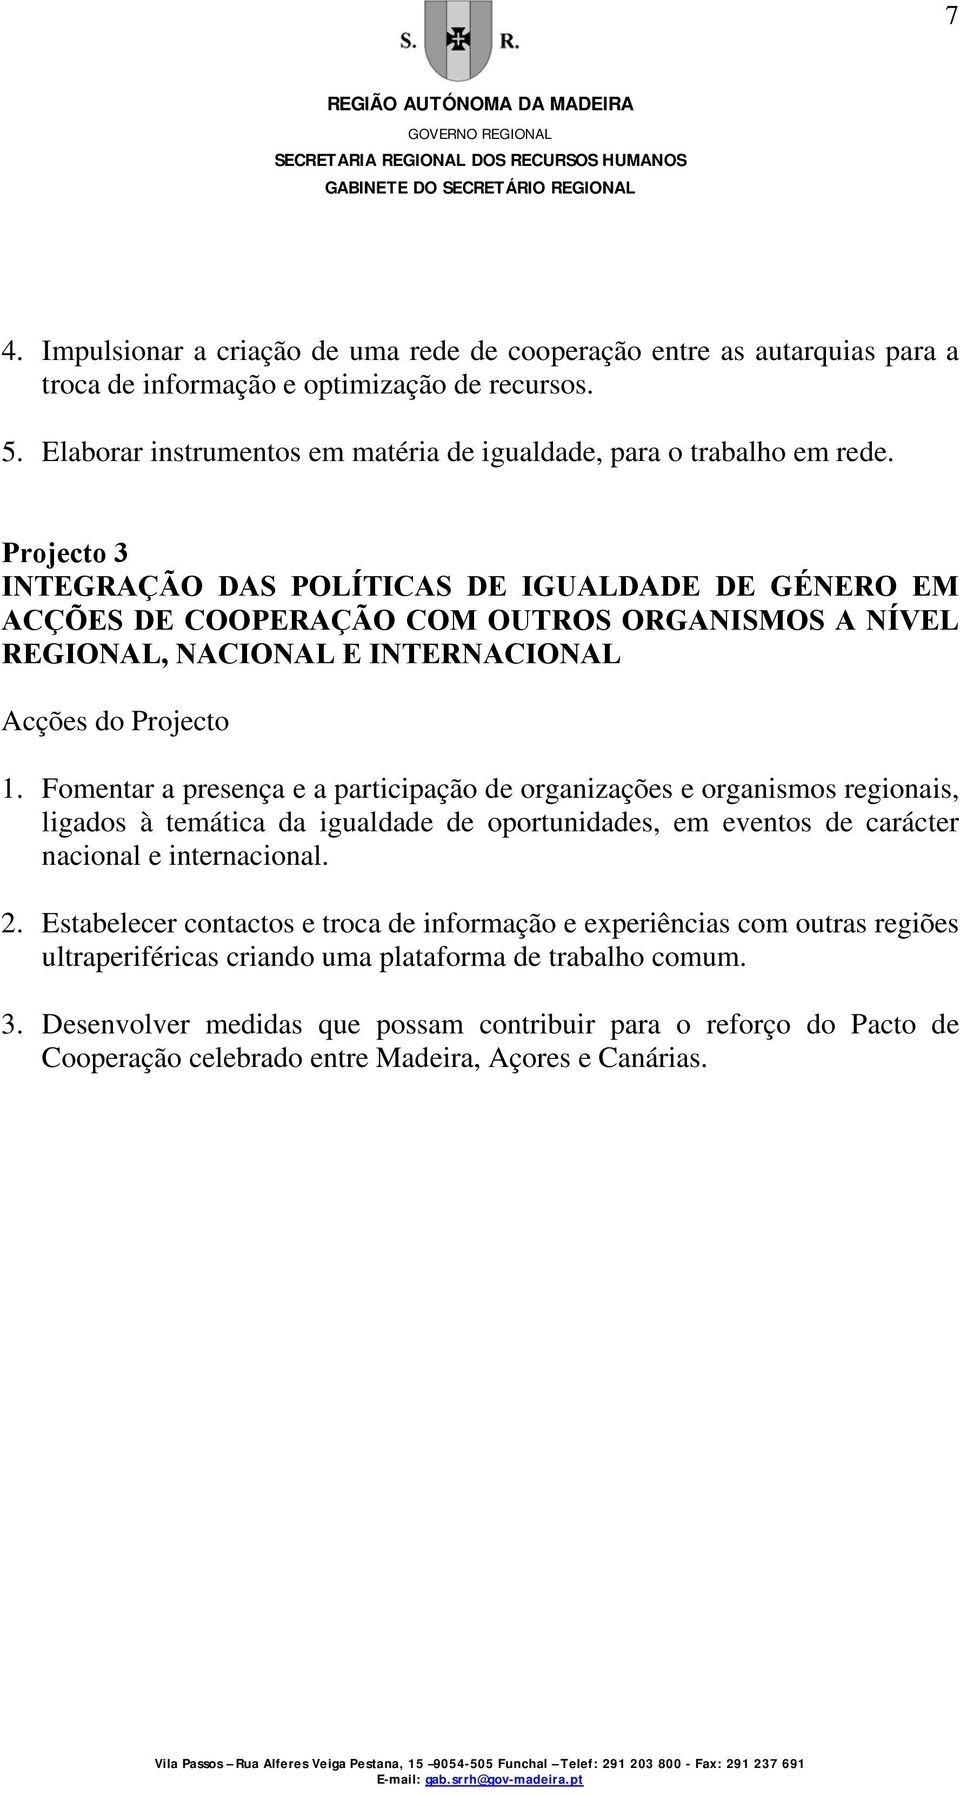 Projecto 3 INTEGRAÇÃO DAS POLÍTICAS DE IGUALDADE DE GÉNERO EM ACÇÕES DE COOPERAÇÃO COM OUTROS ORGANISMOS A NÍVEL REGIONAL, NACIONAL E INTERNACIONAL 1.